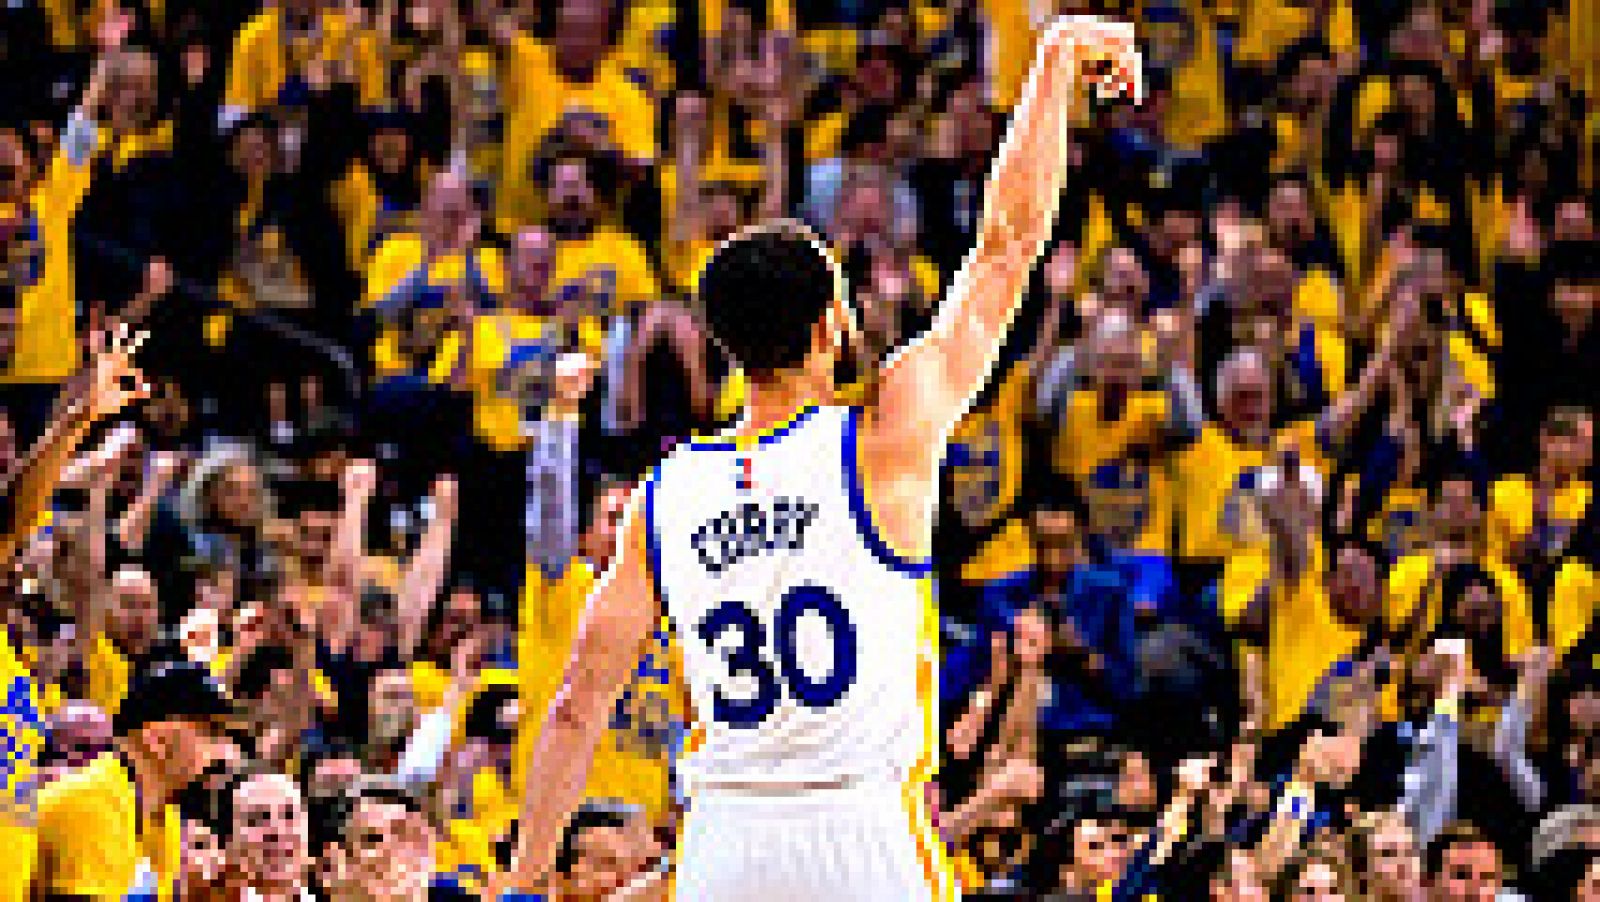 El base Stephen Curry logró 19 puntos para los Warriors de Golden State, que vencieron por 110-81 a los Trail Blazers de Portland en el segundo partido de la serie final de la Conferencia Oeste.